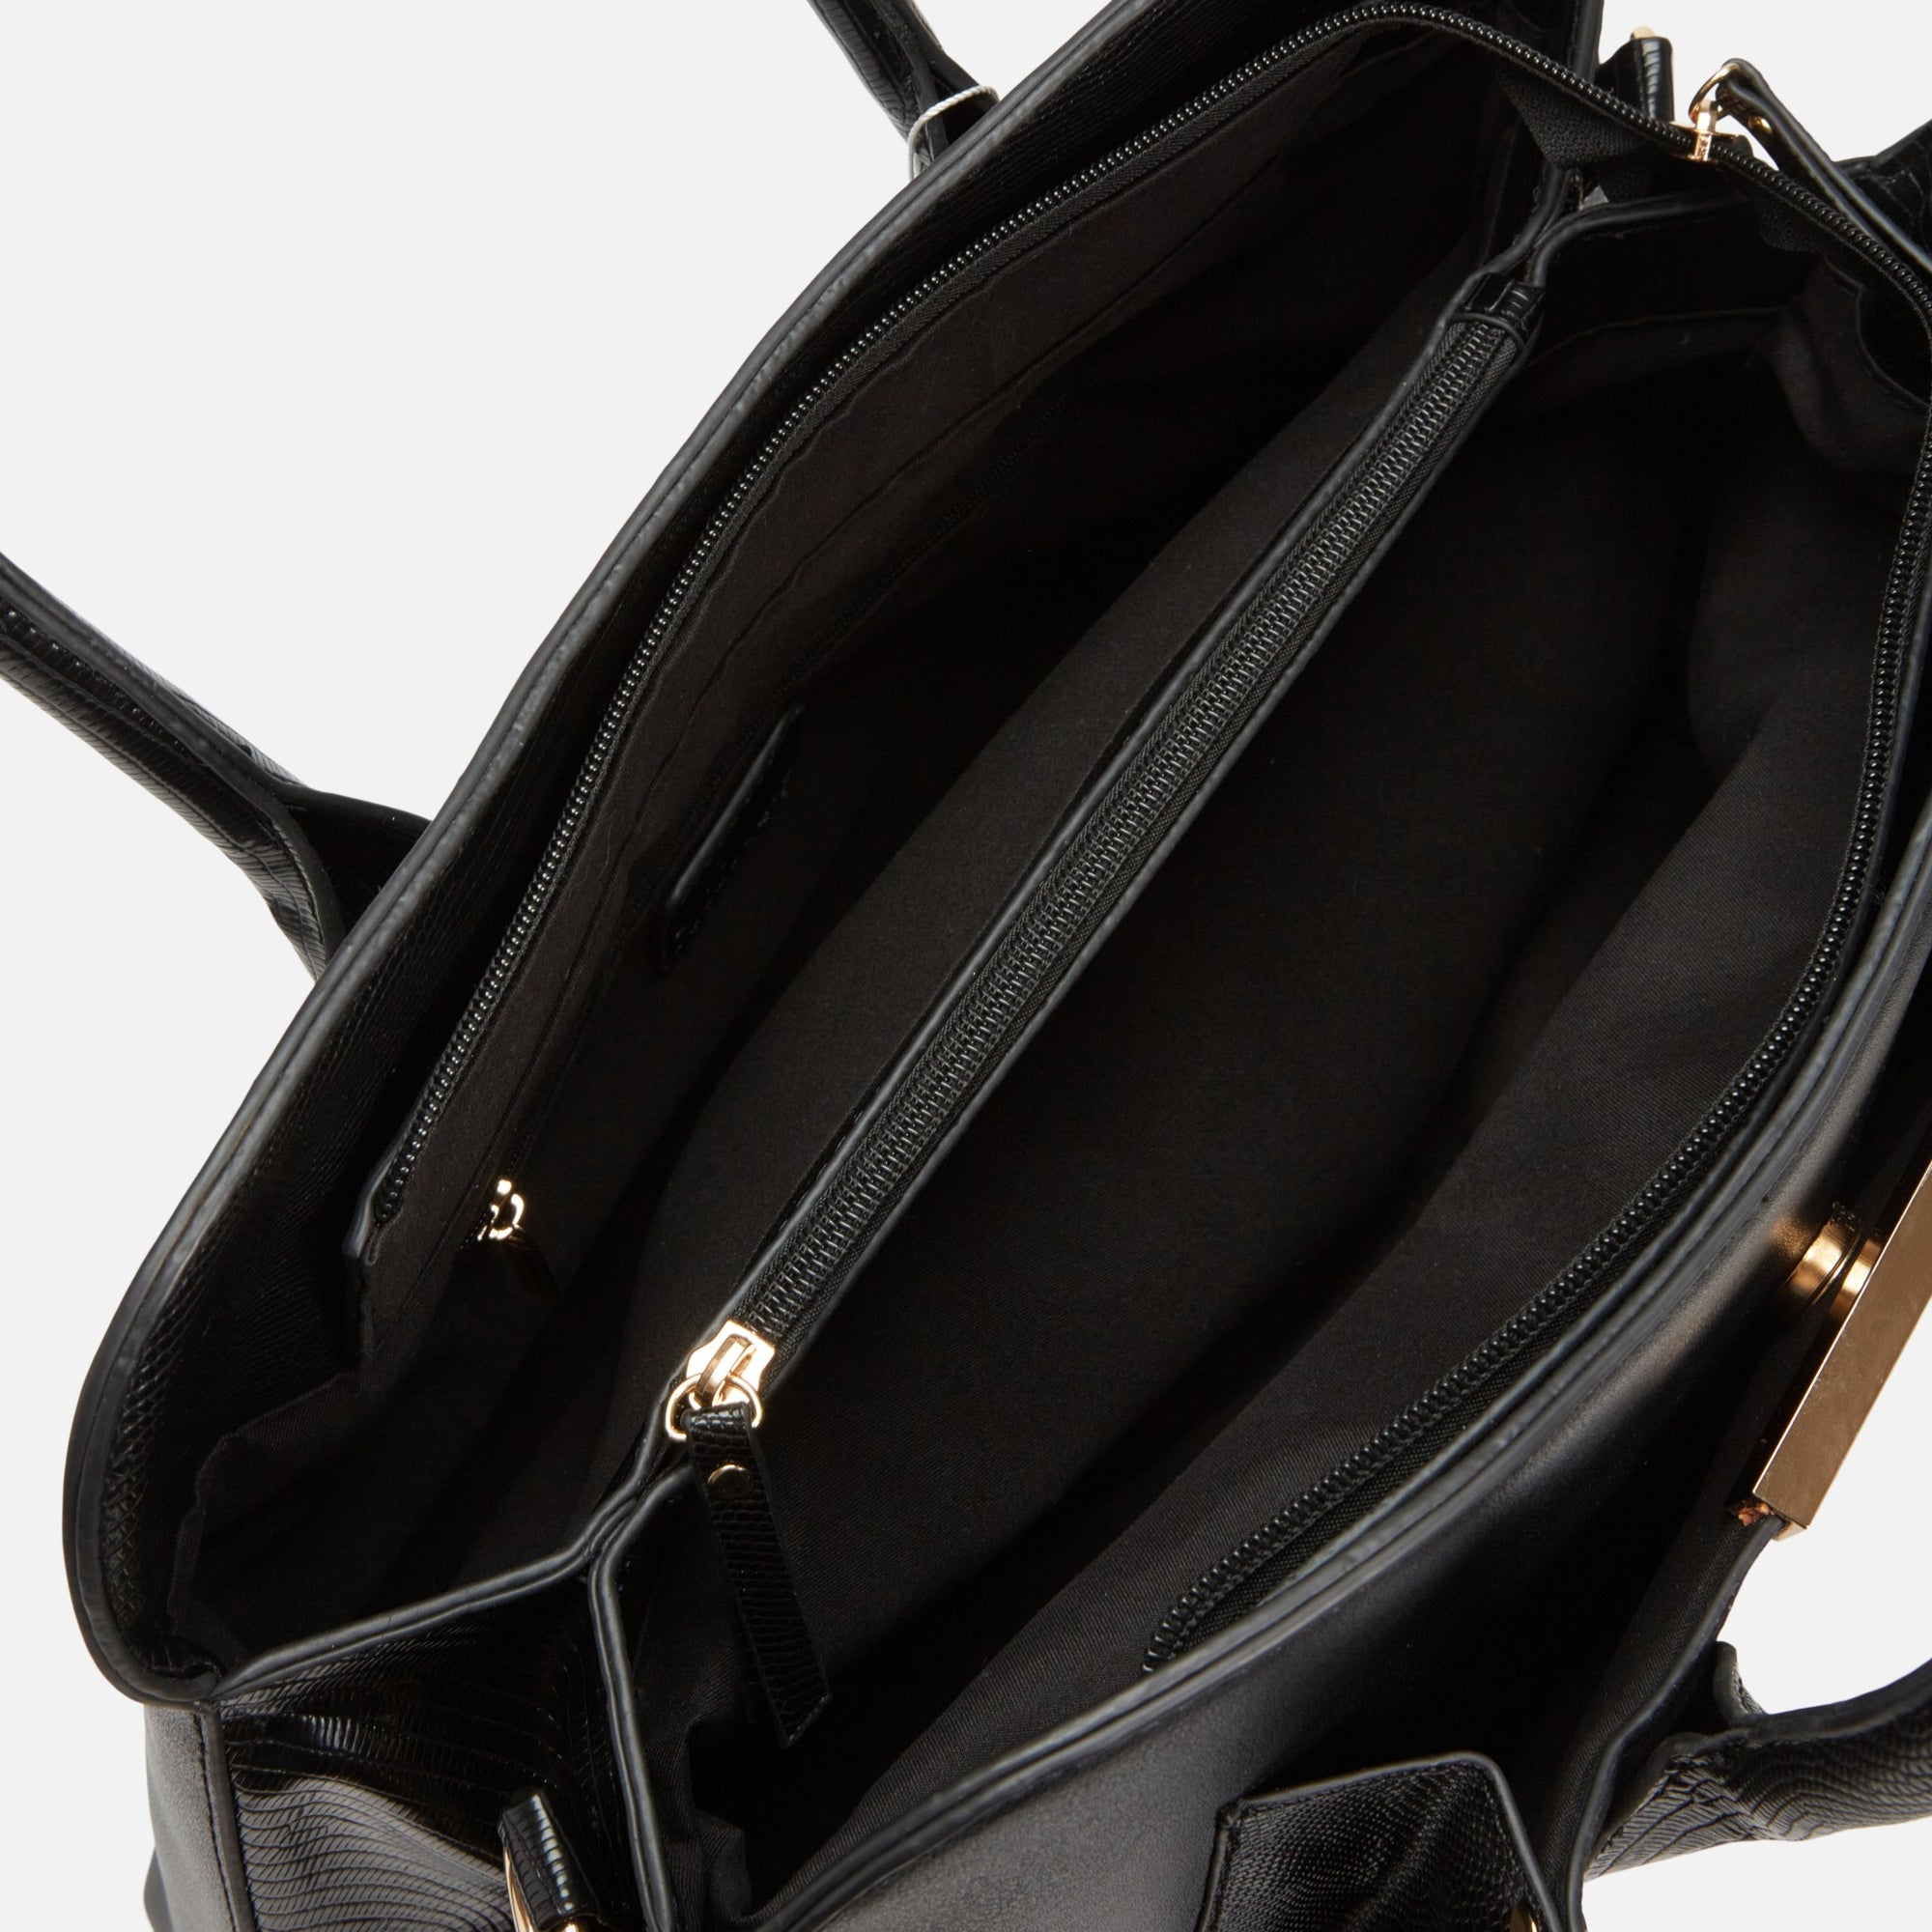 Black shoulder bag with gold accents